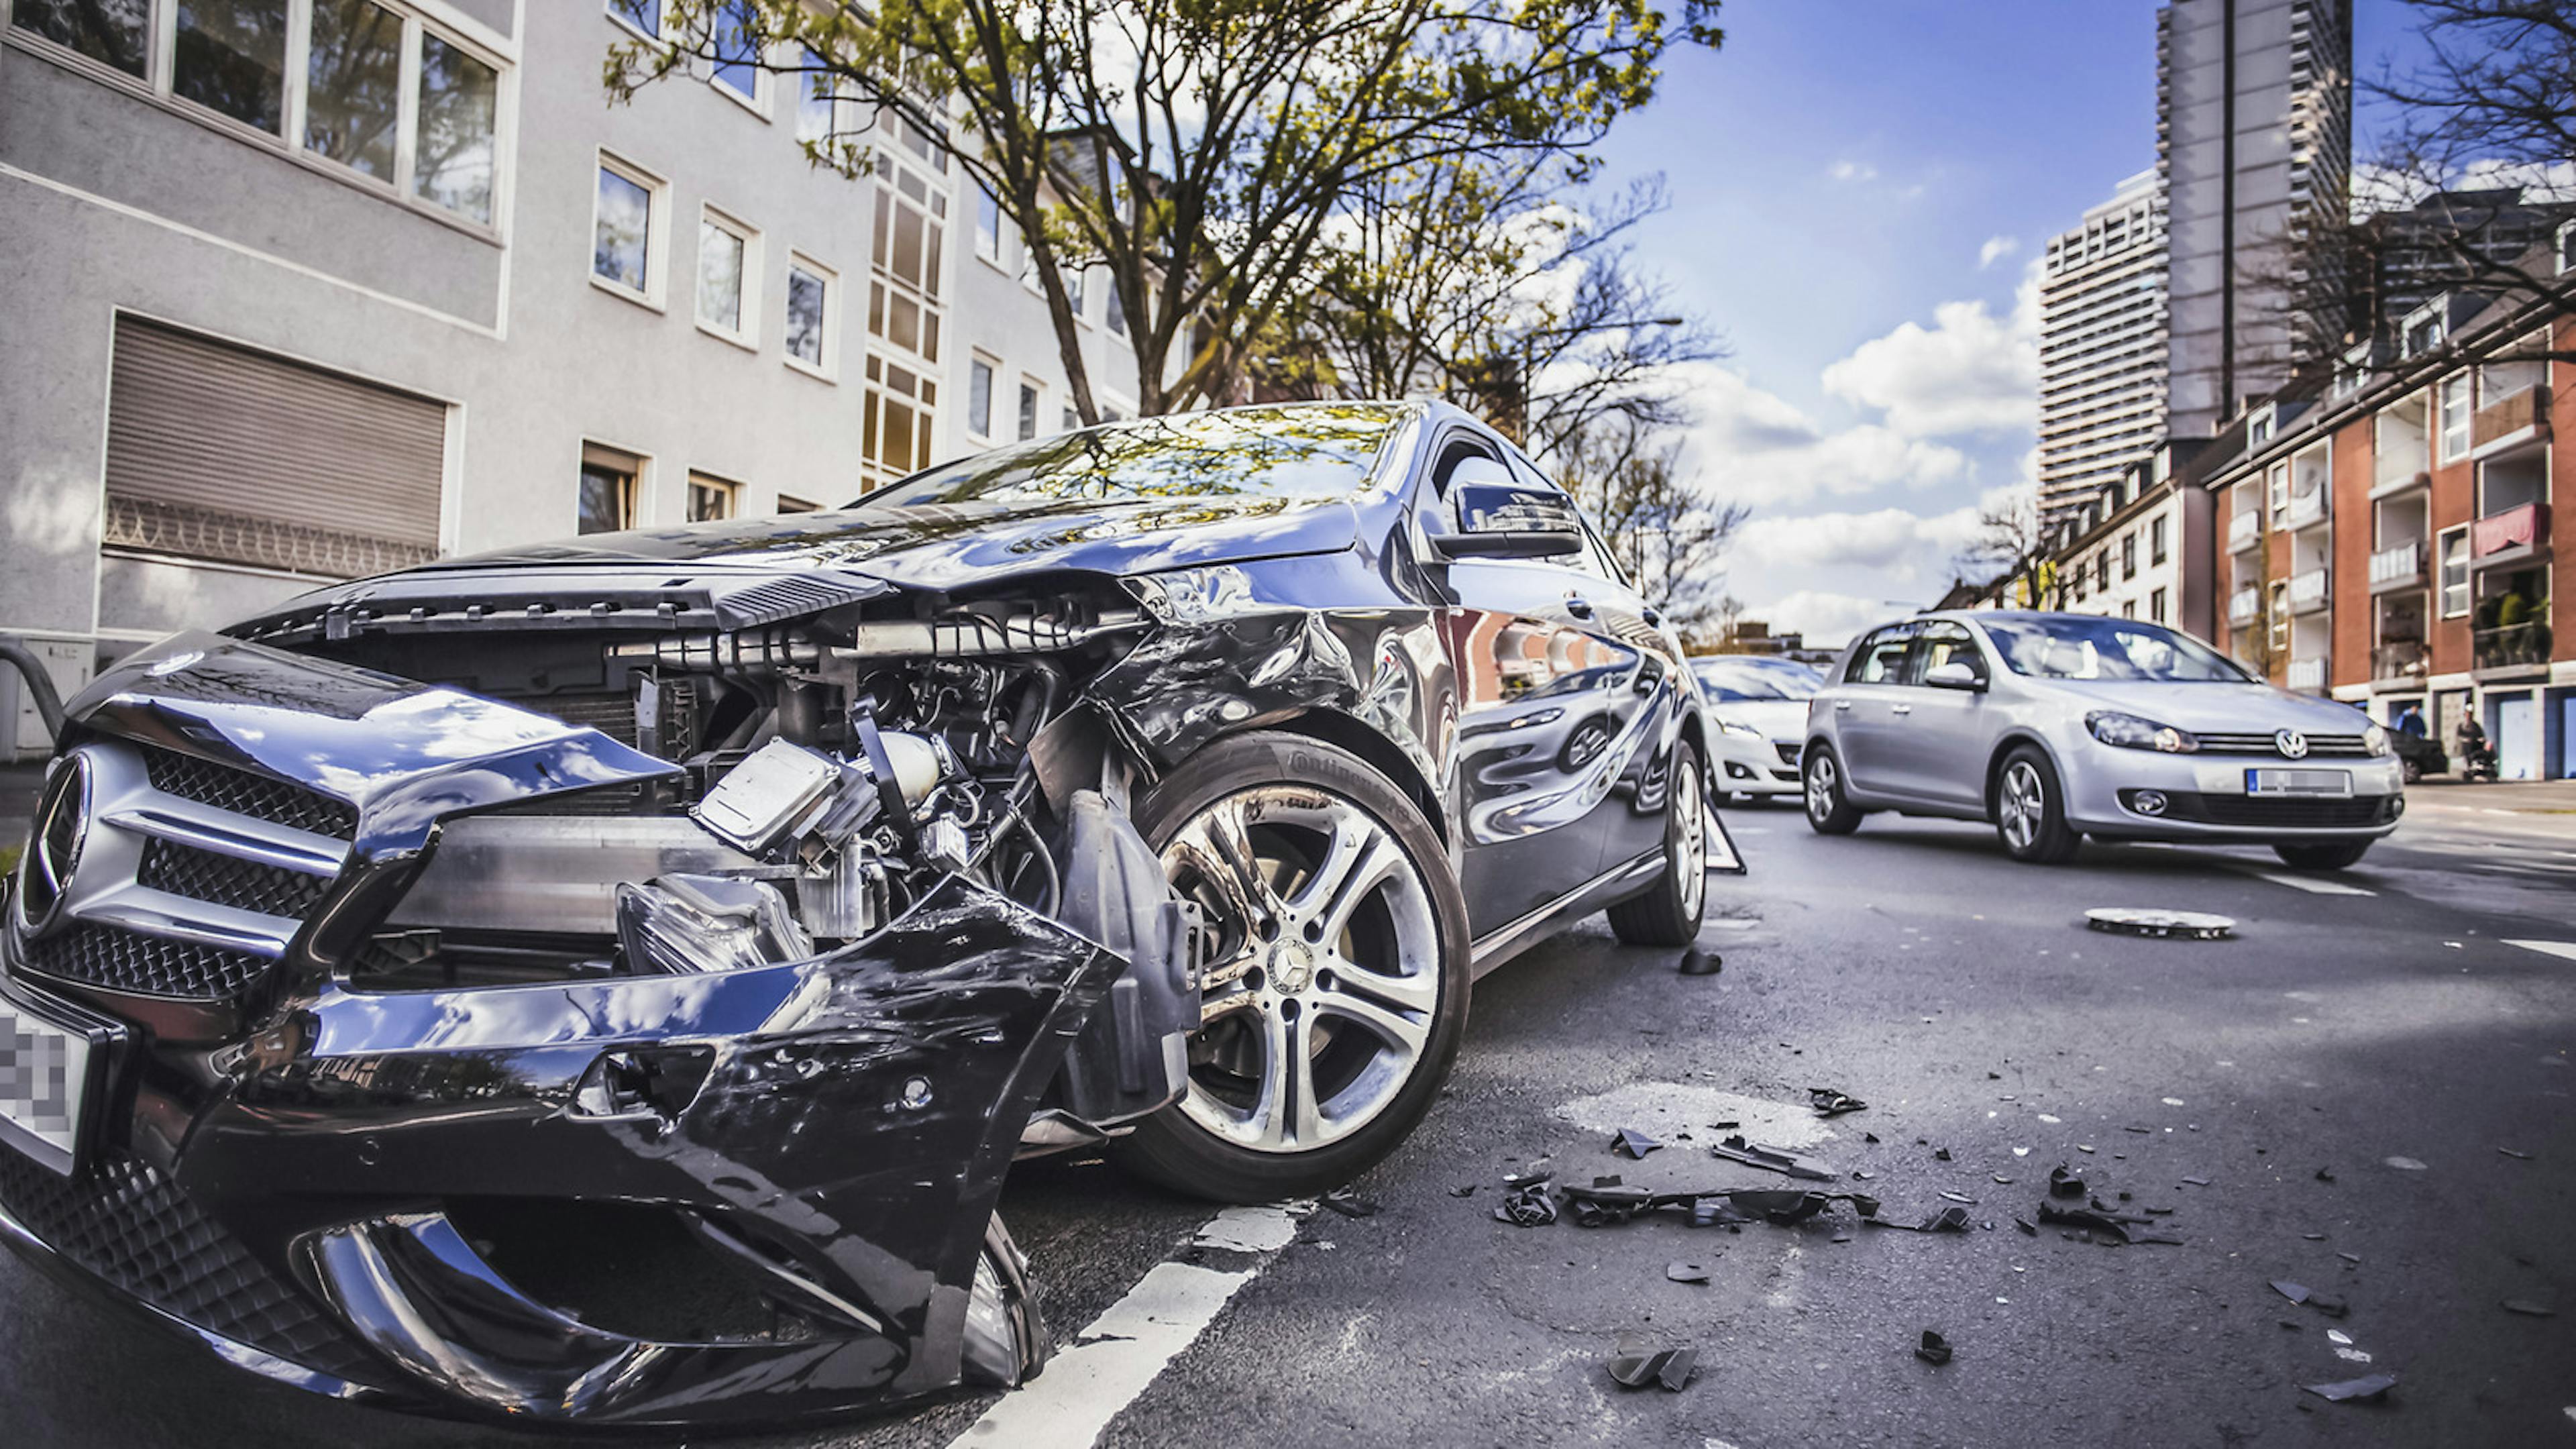 Ein durch einen Unfall zerstörter Mercedes steht am Straßenrand in einer Stadt.